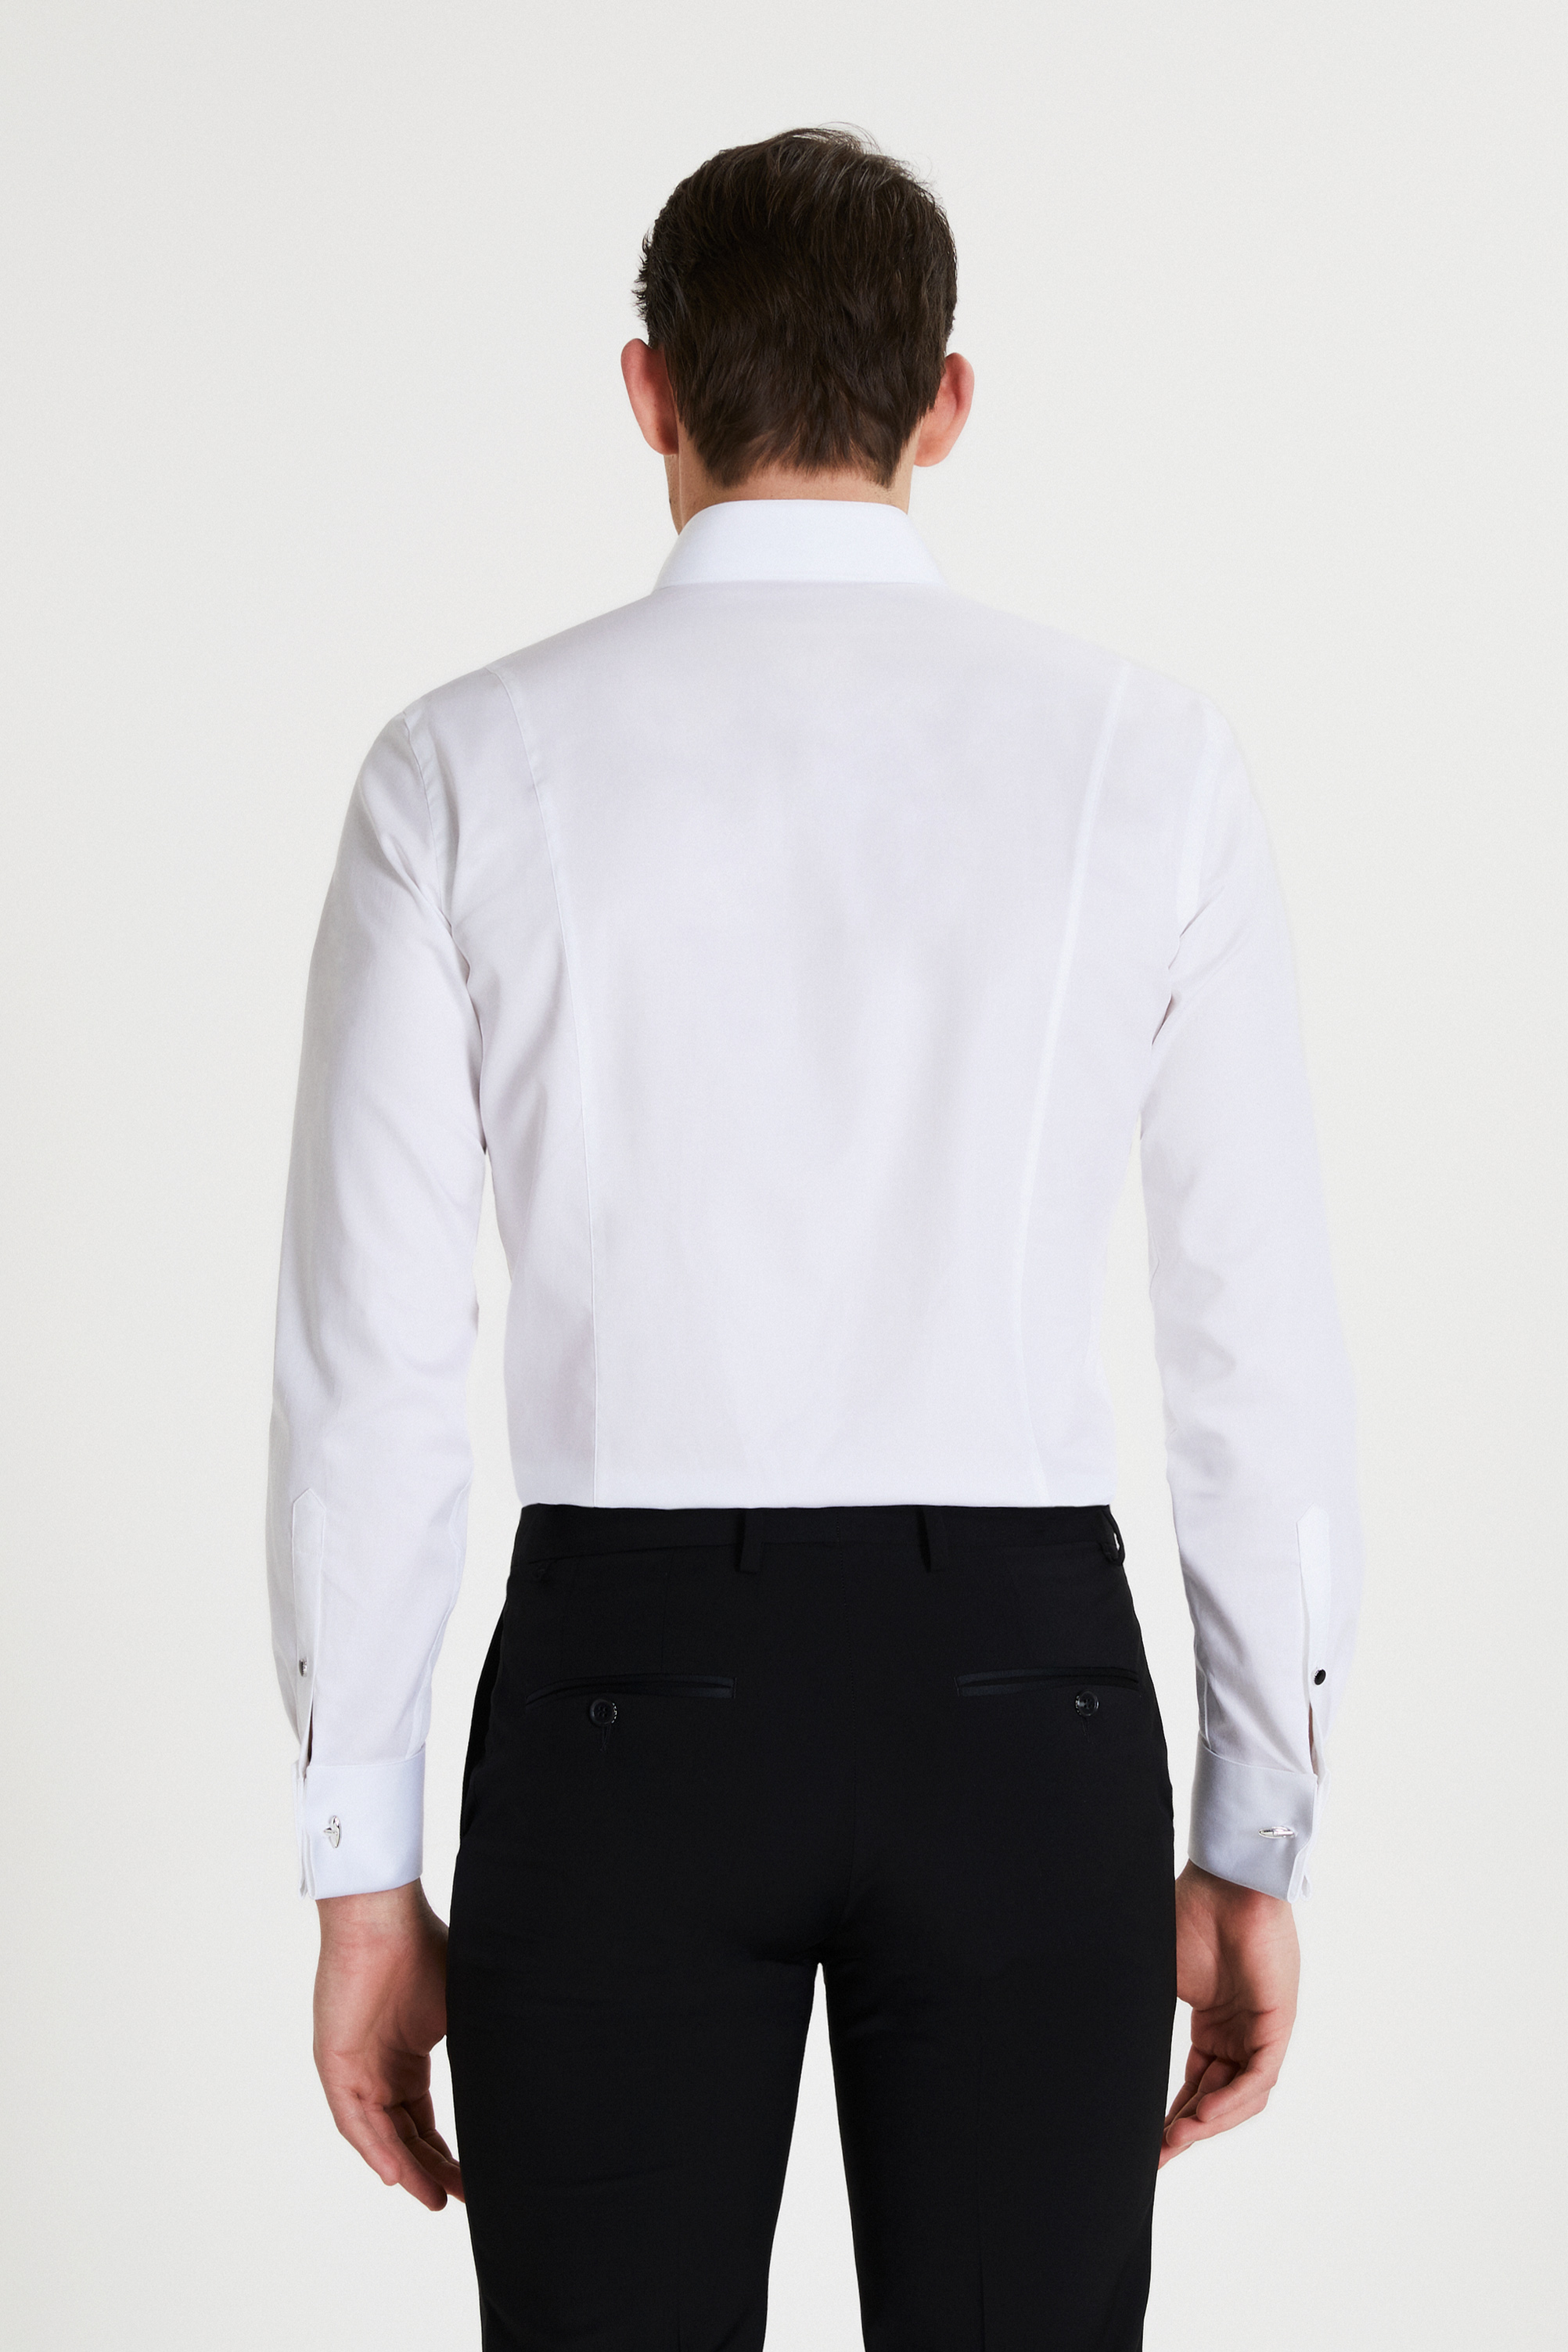 Damat Tween Damat Slim Fit Beyaz Düz Nano Care Smokin Gömlek. 4